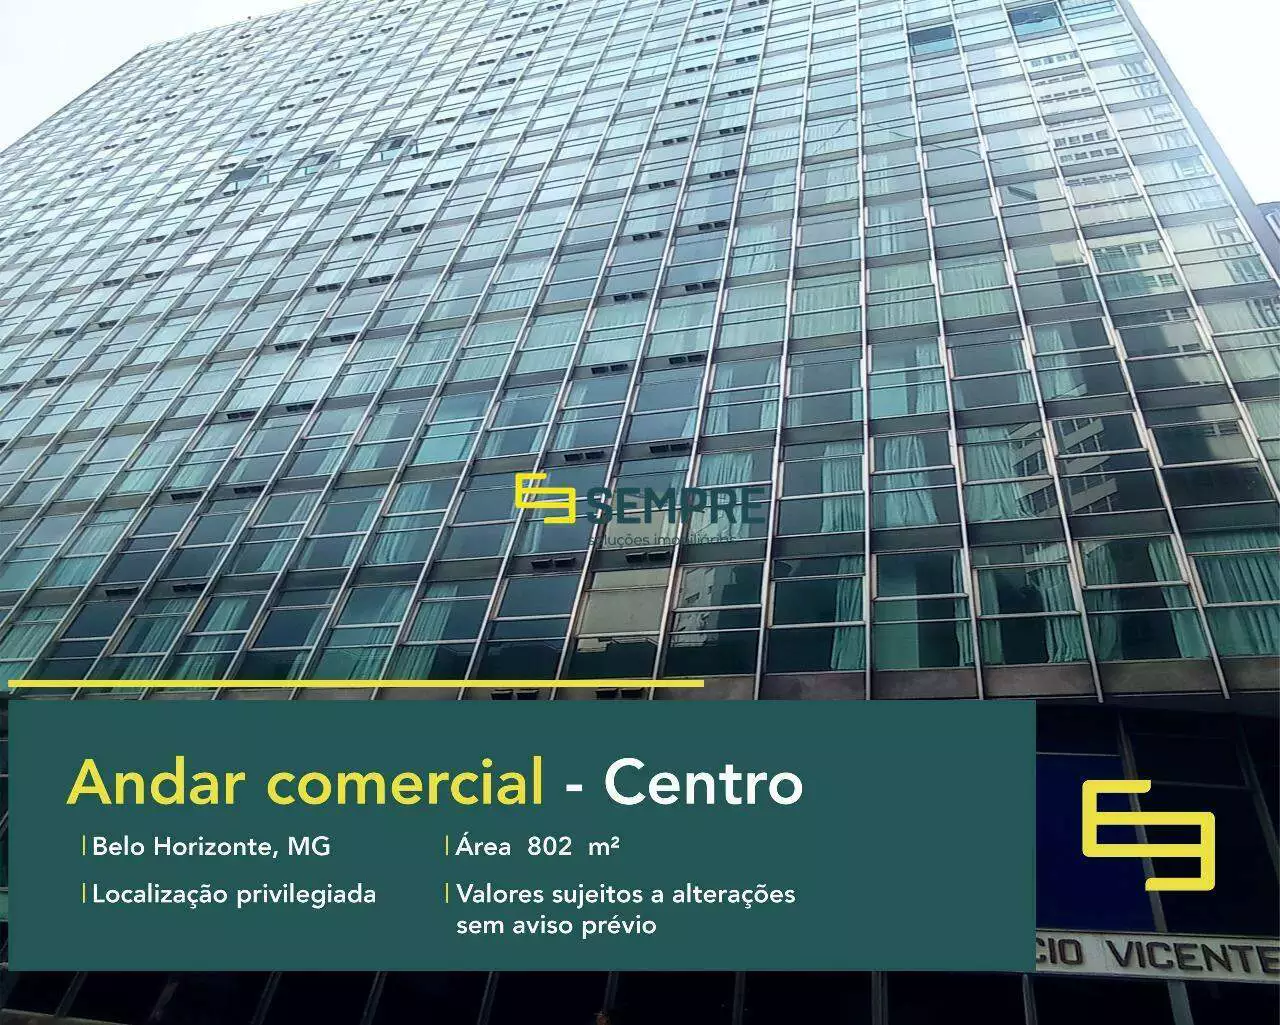 Andar corporativo no Edifício Vicente de Araujo para locação - BH, excelente localização. O ponto comercial conta com área de 802 m².